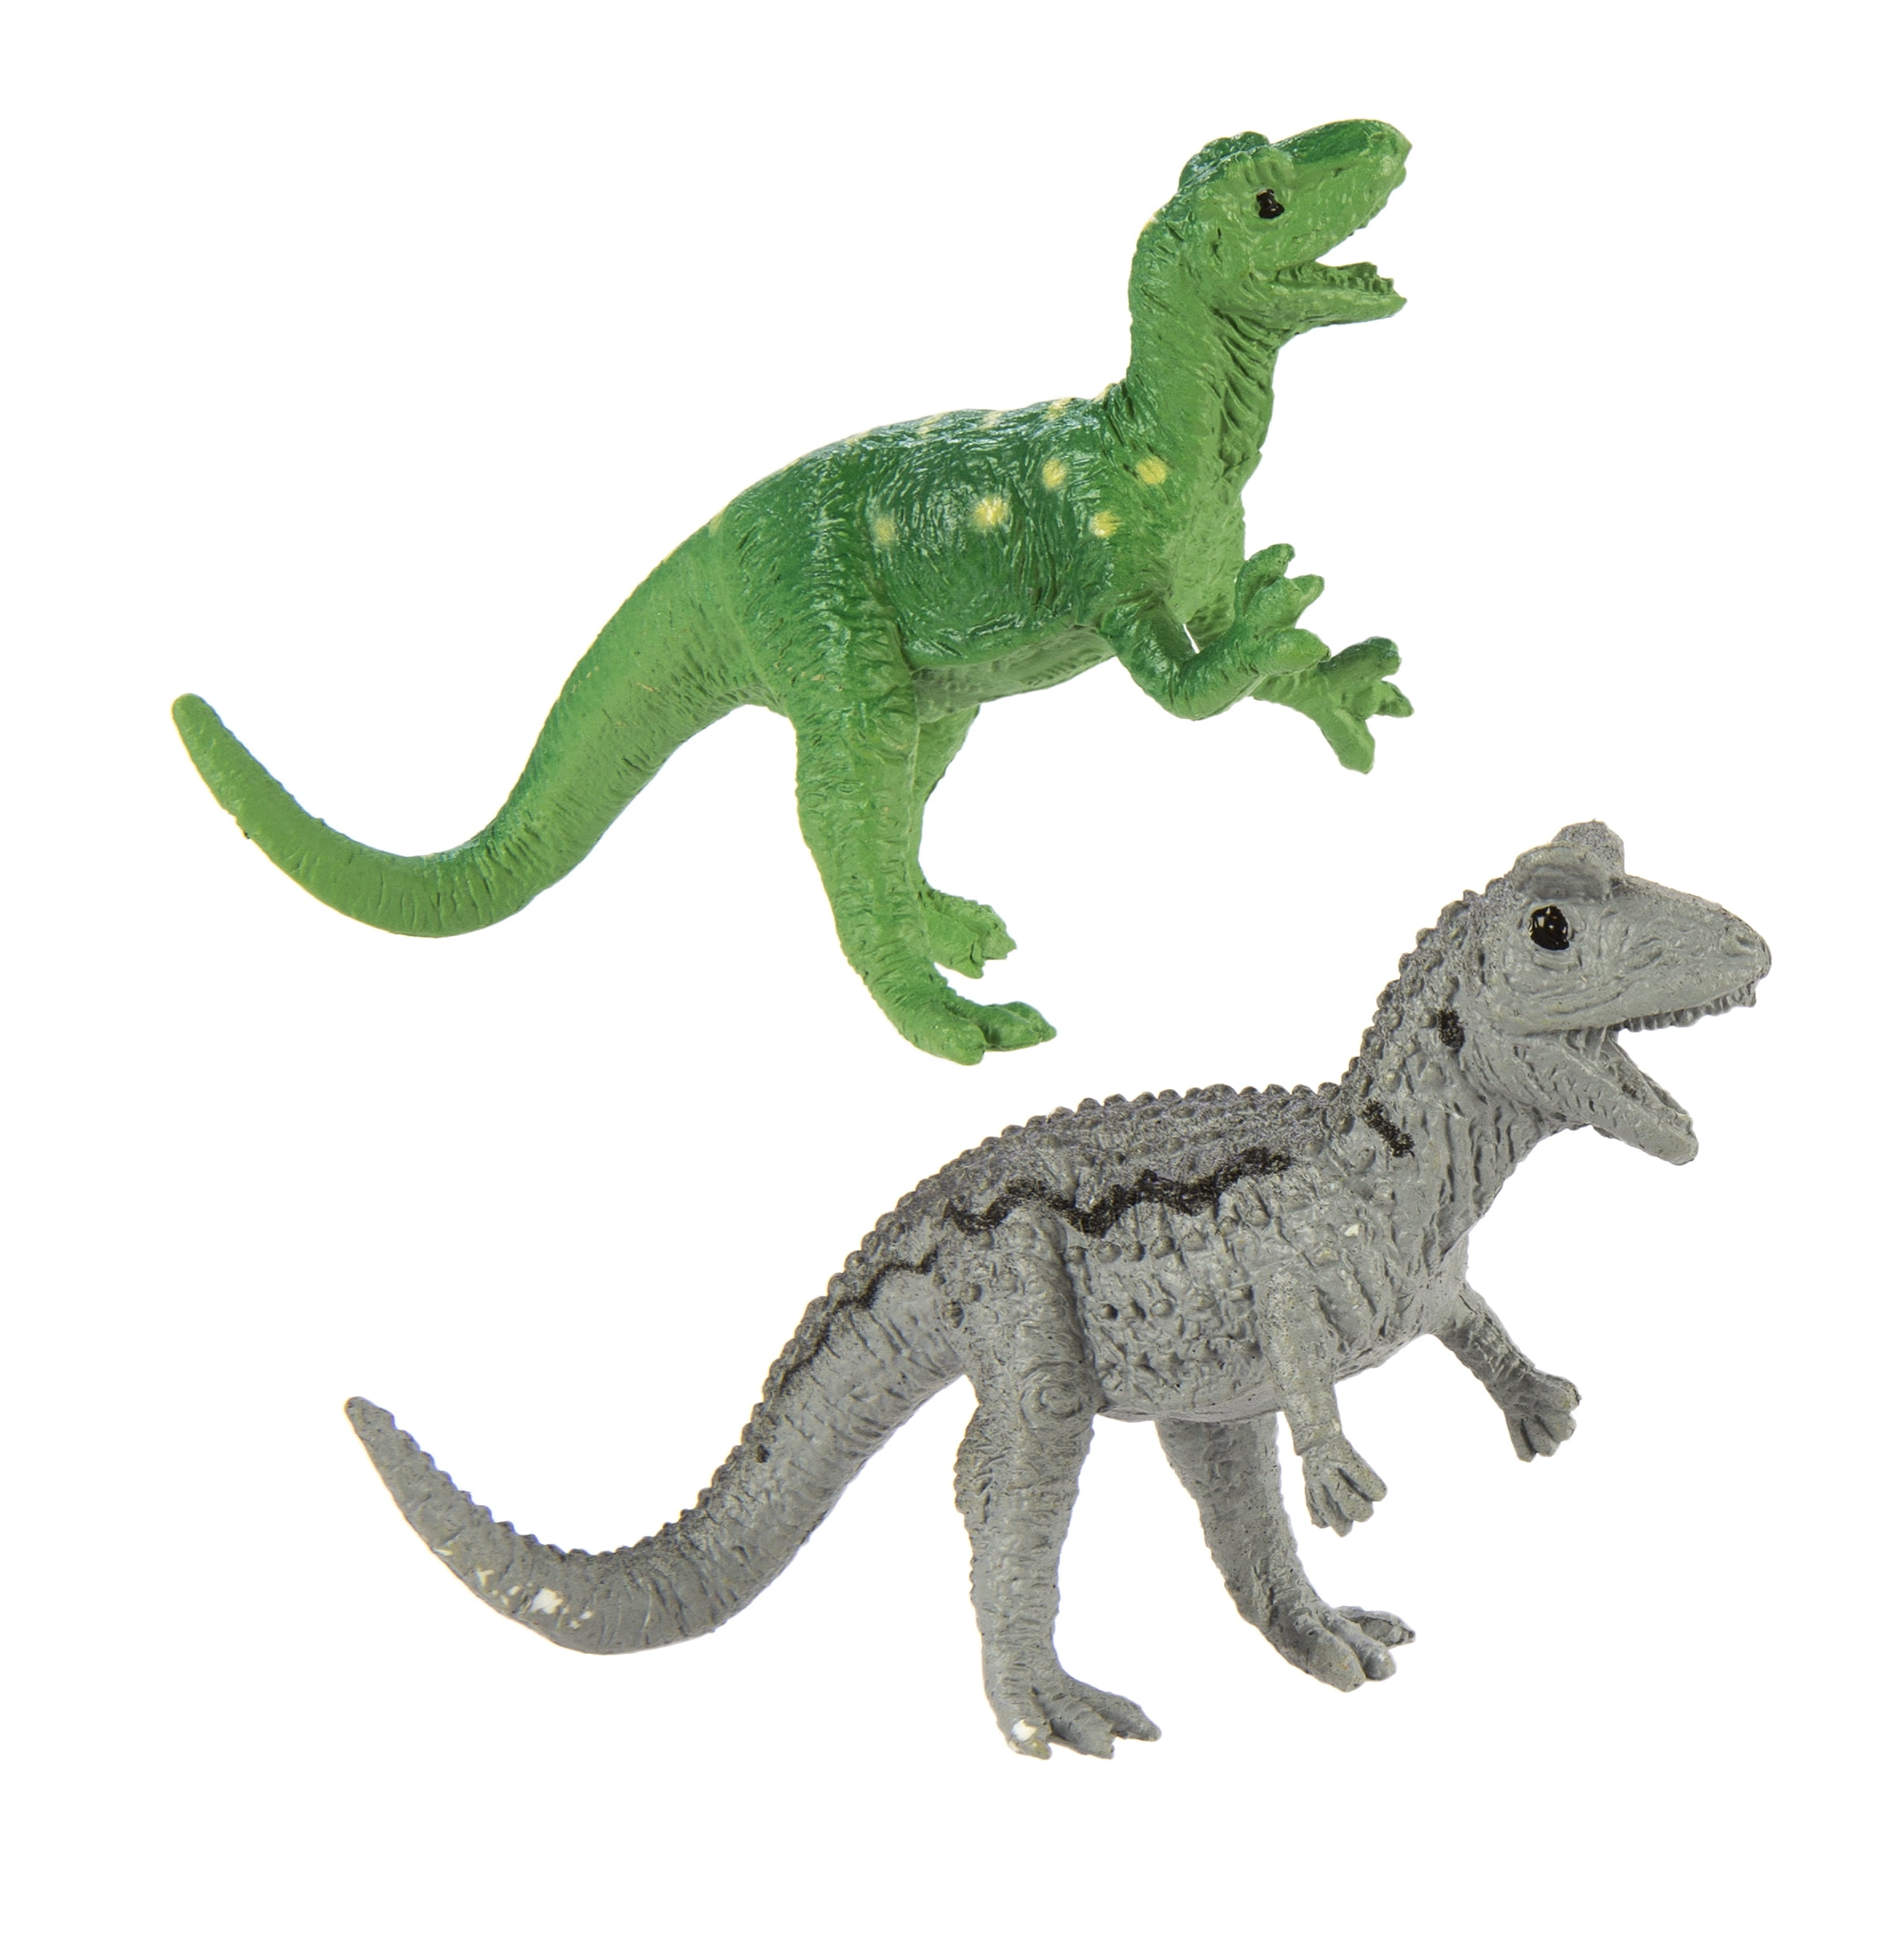 Carnivorous Dinos Toob Mini Figures Safari Ltd NEW Toys Educational Figurines 